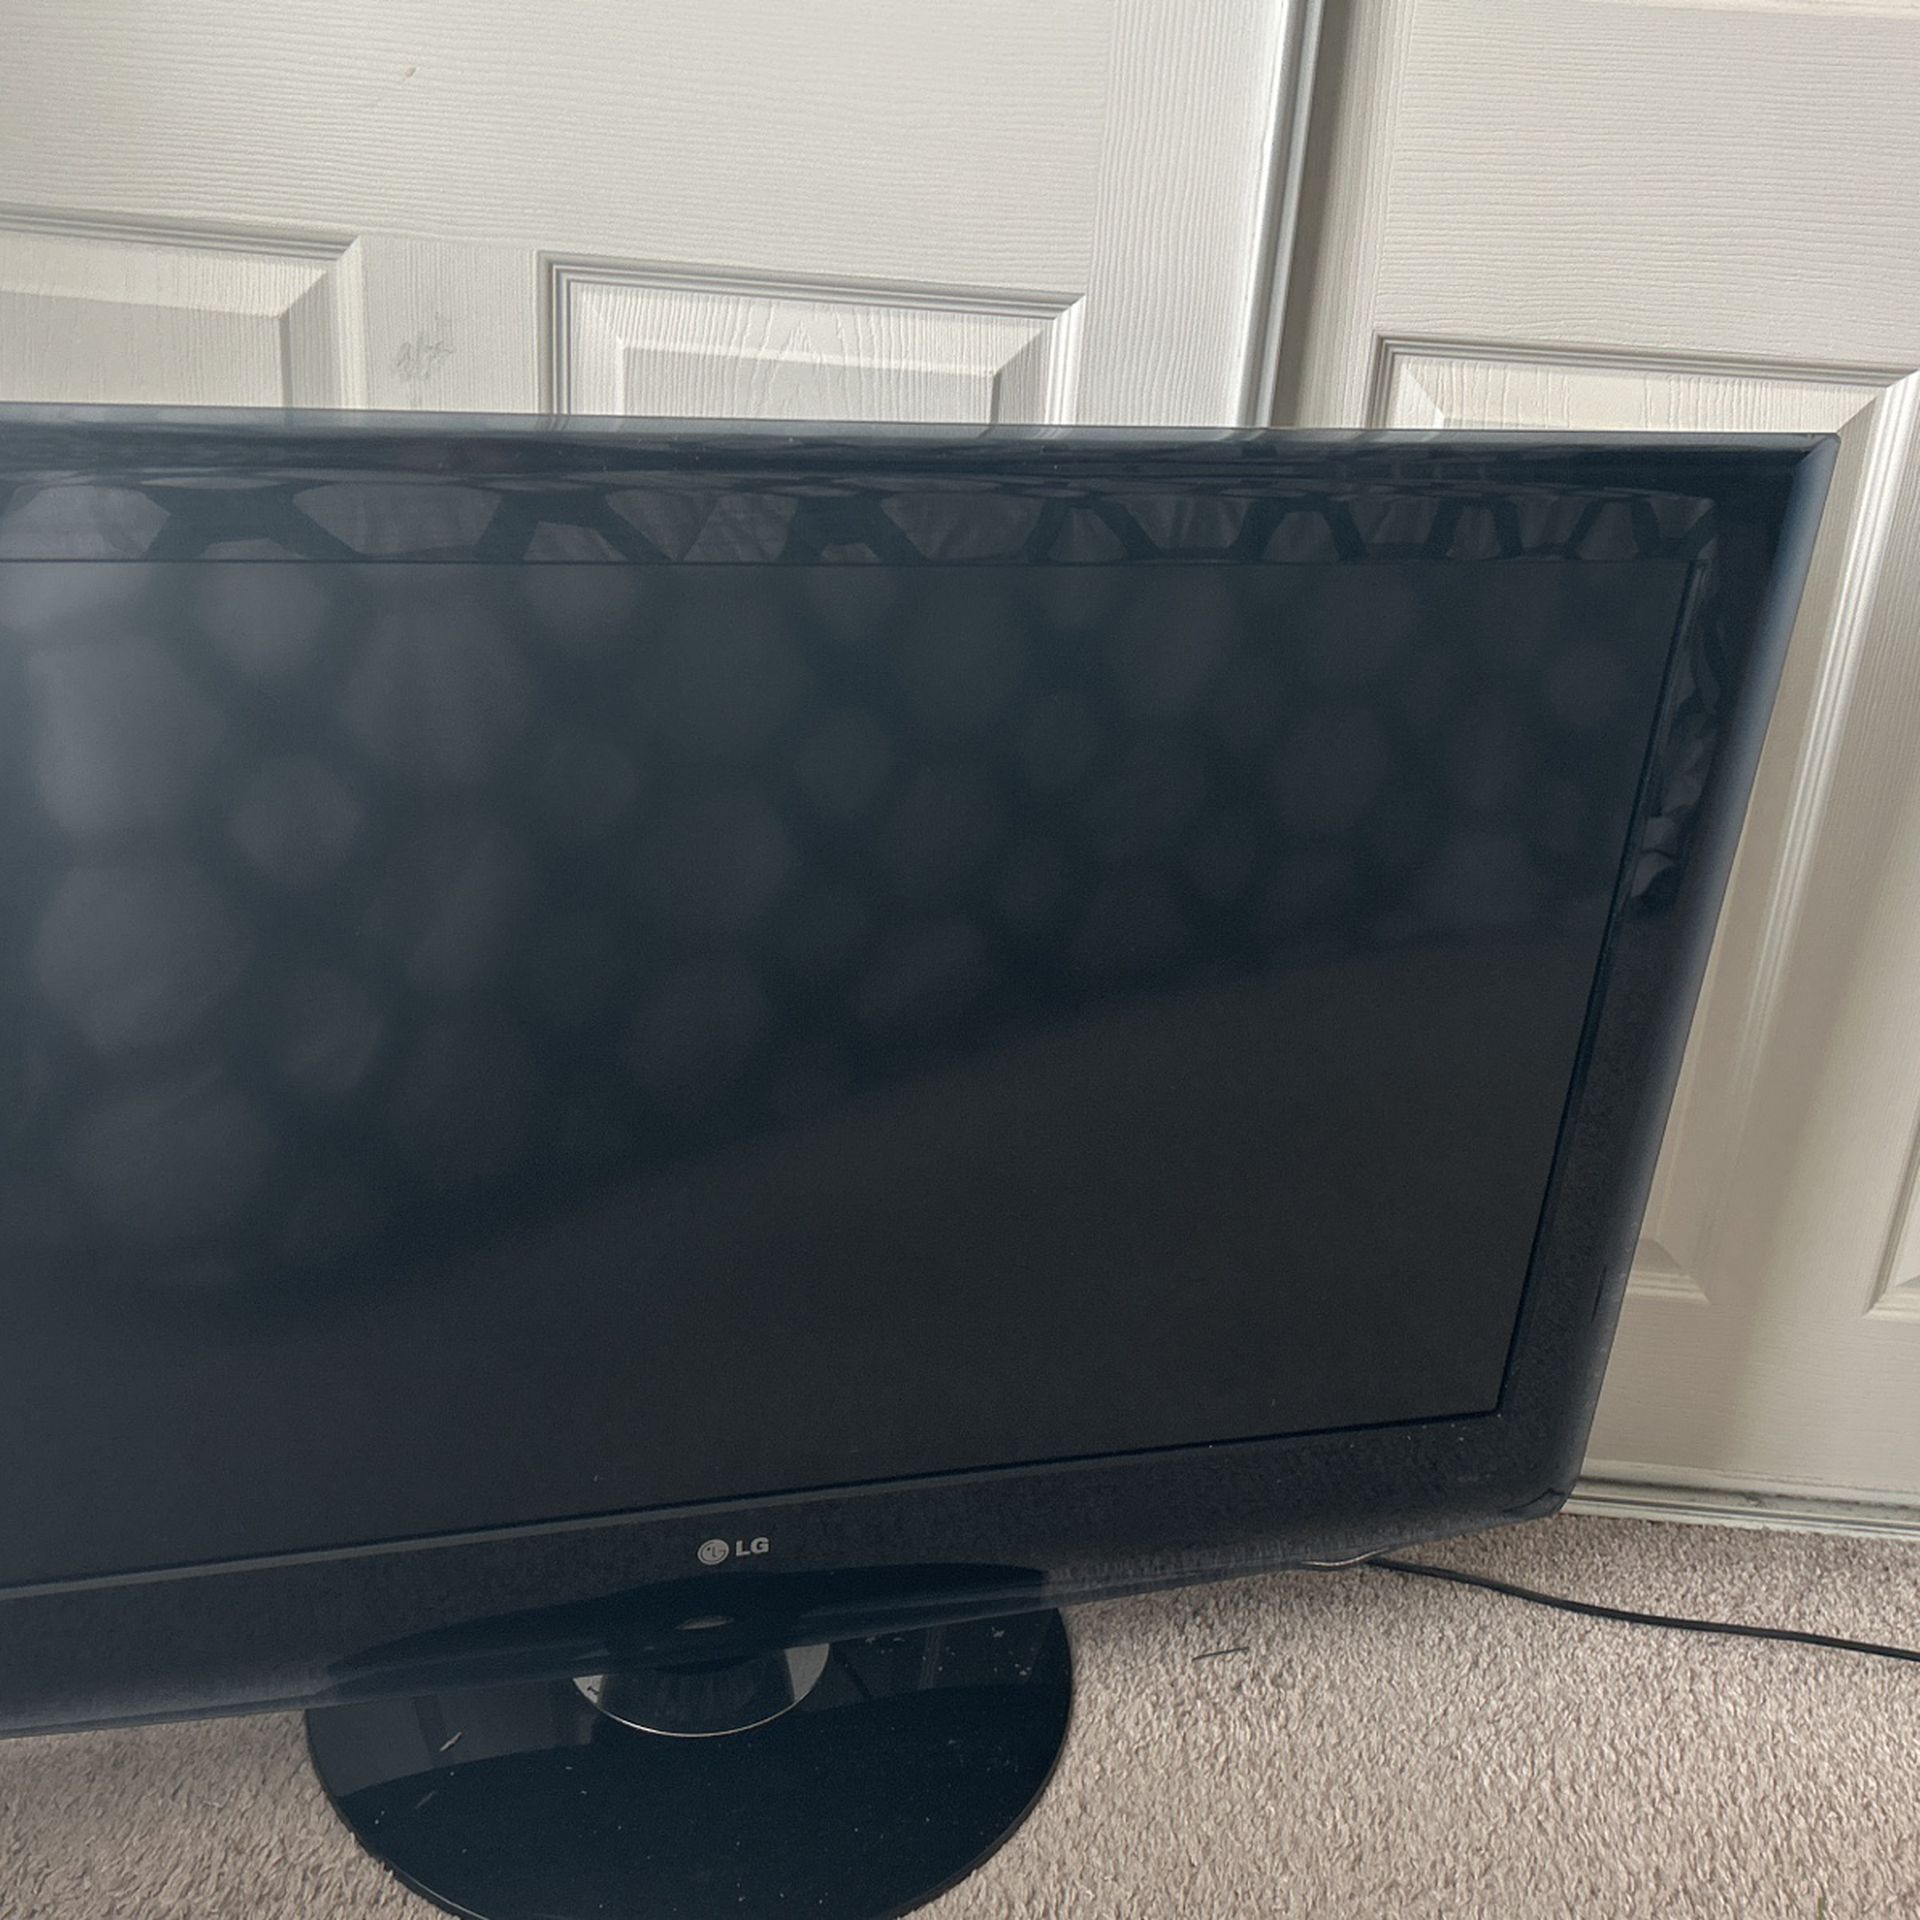 Old Lg Tv Works Got New TVs 42 Inch Works Fine 